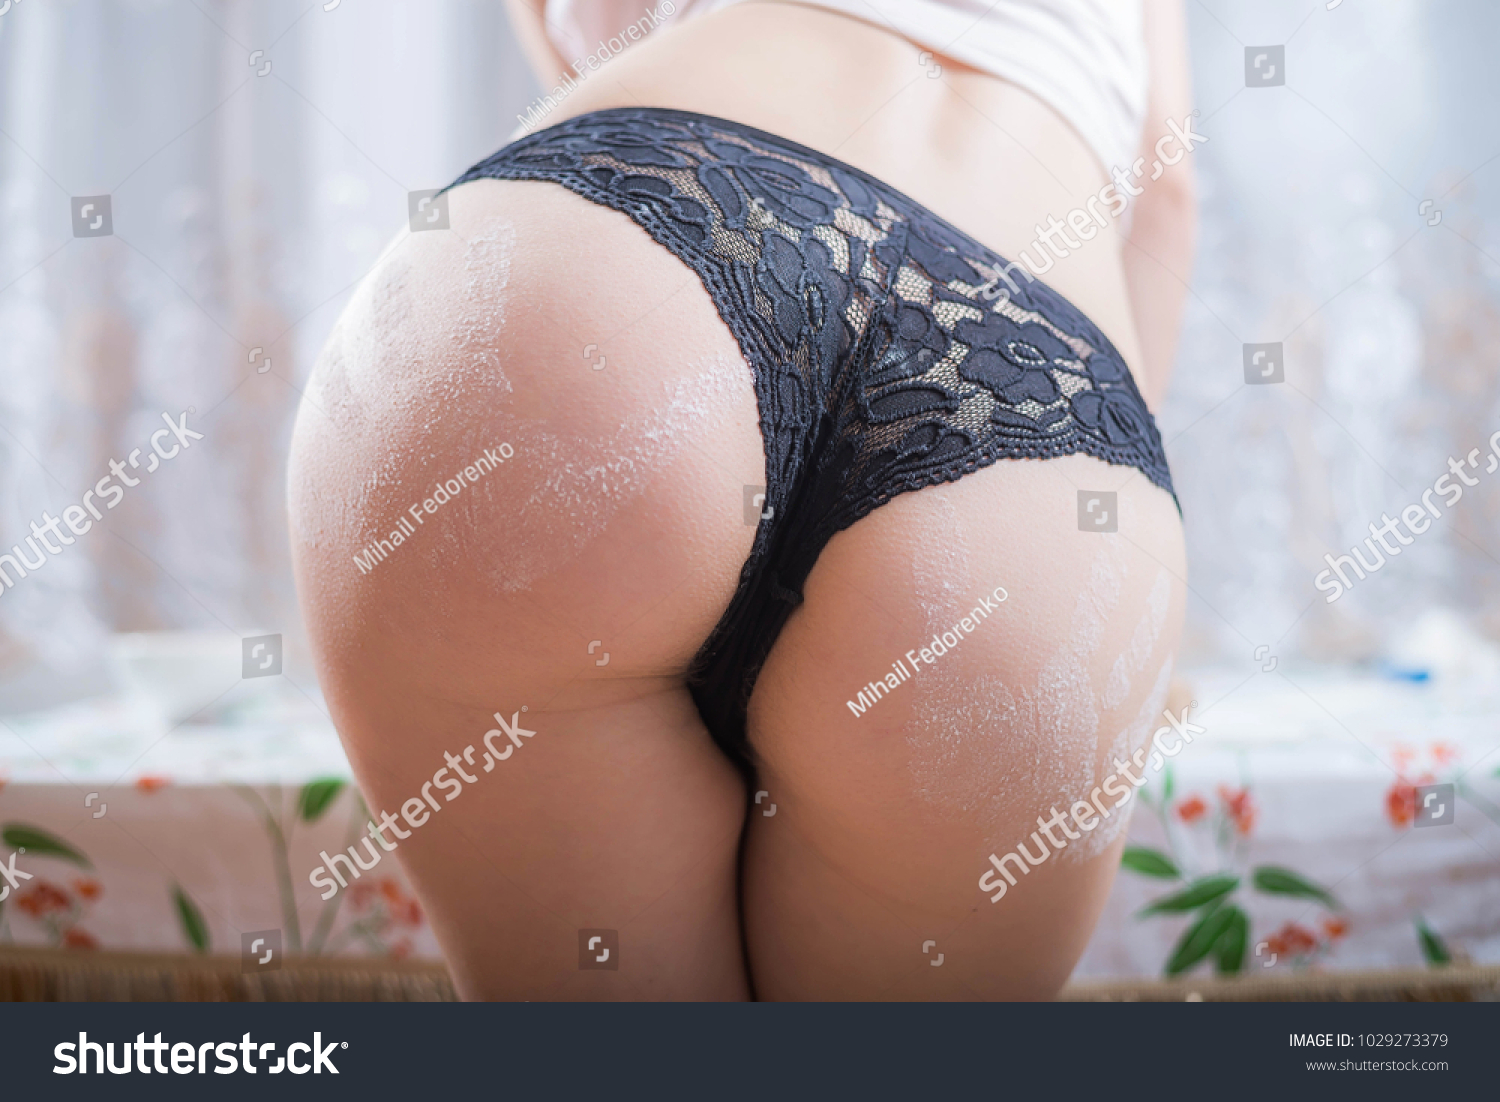 sexy ass panties